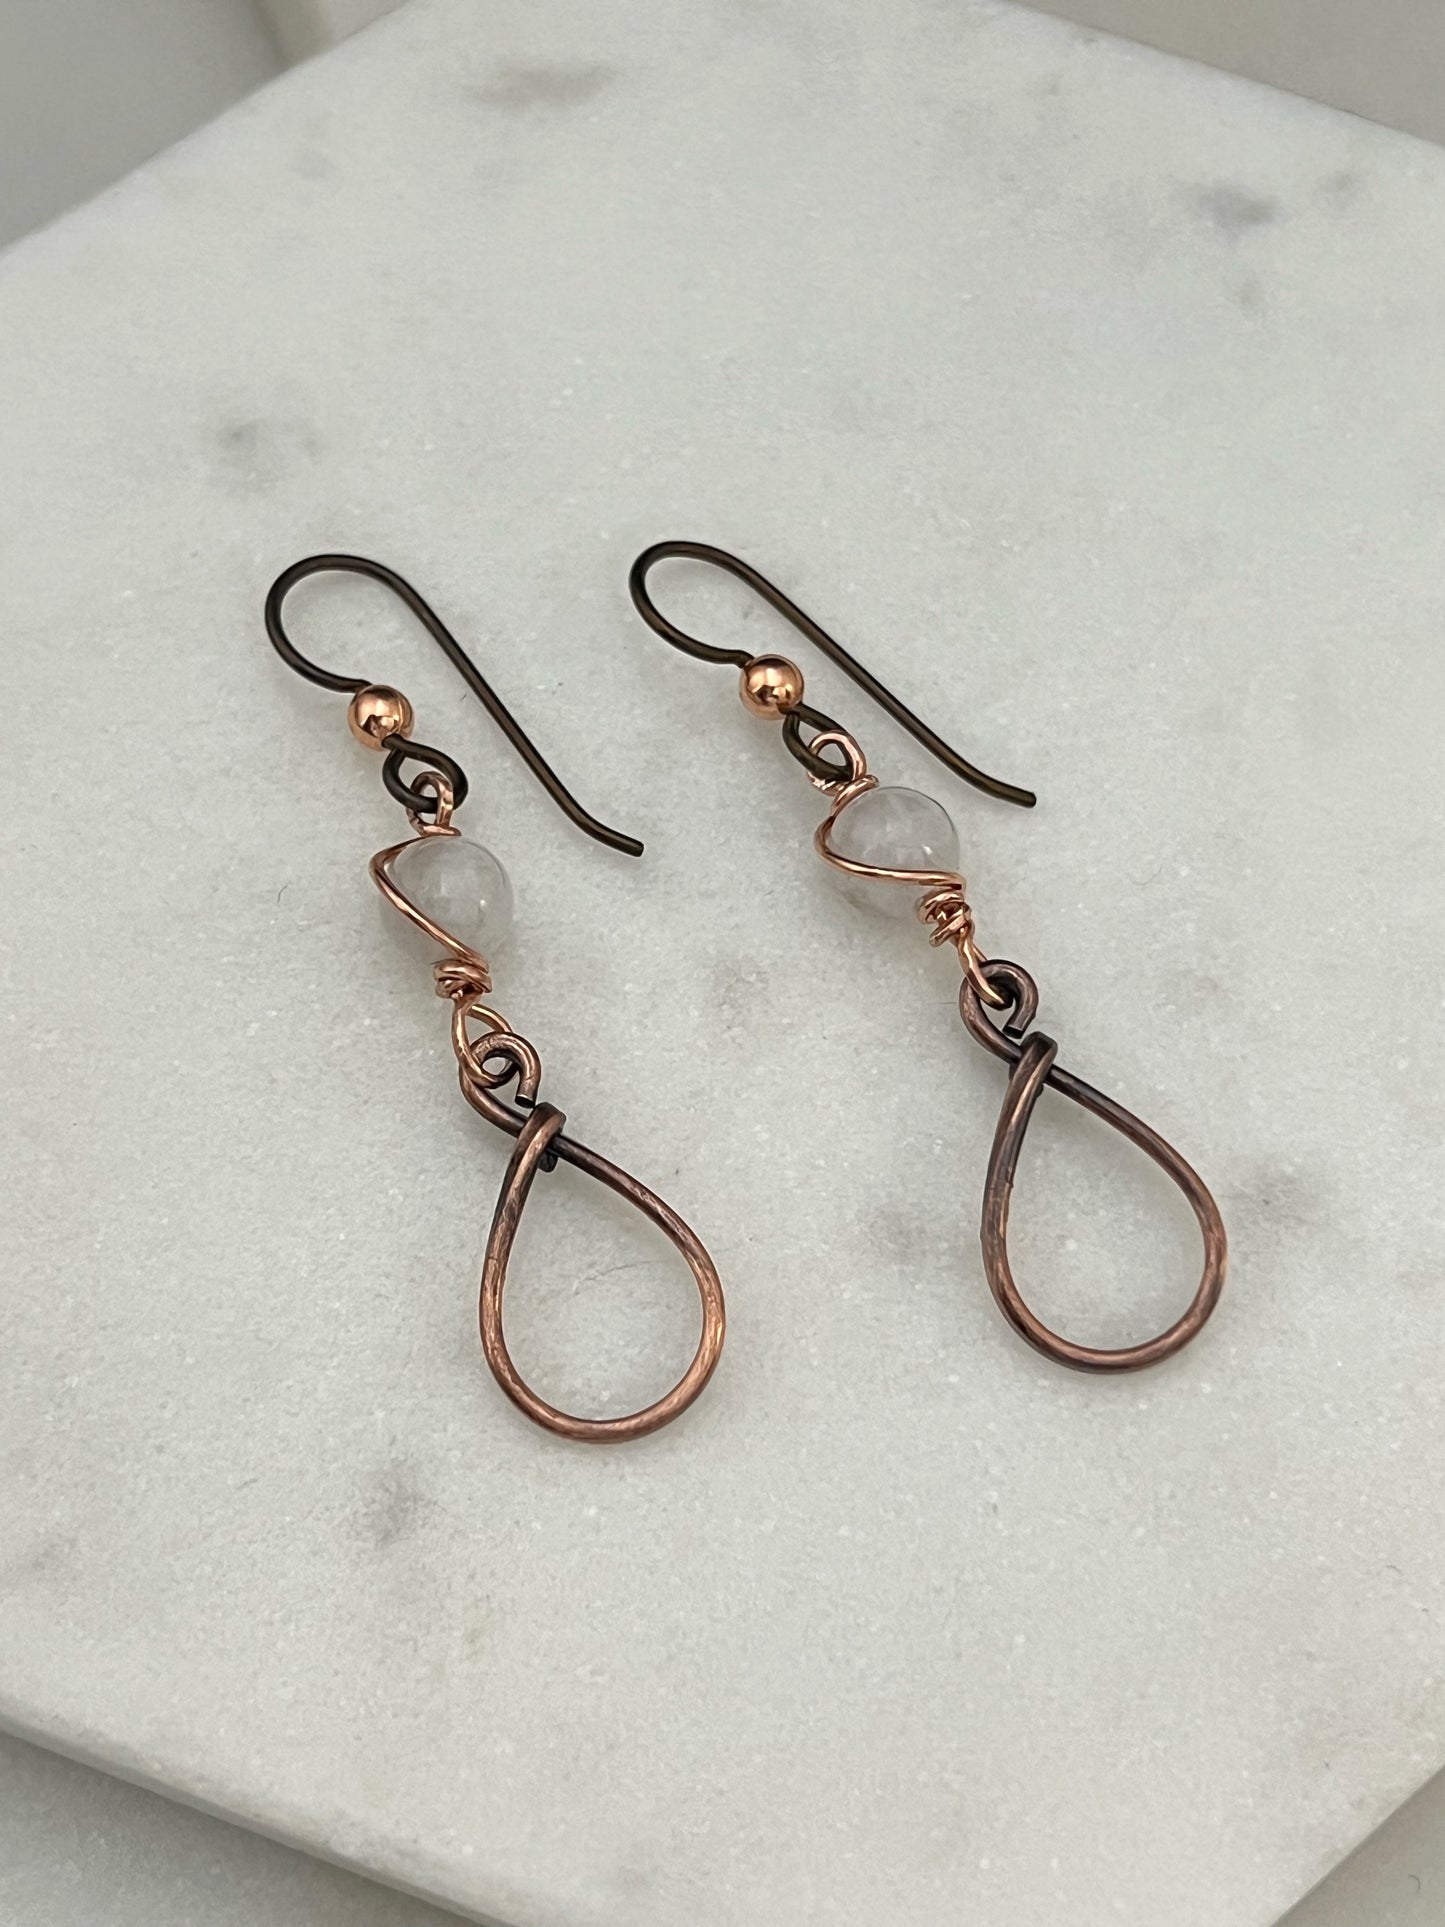 Copper teardrop hoop earrings with moonstone